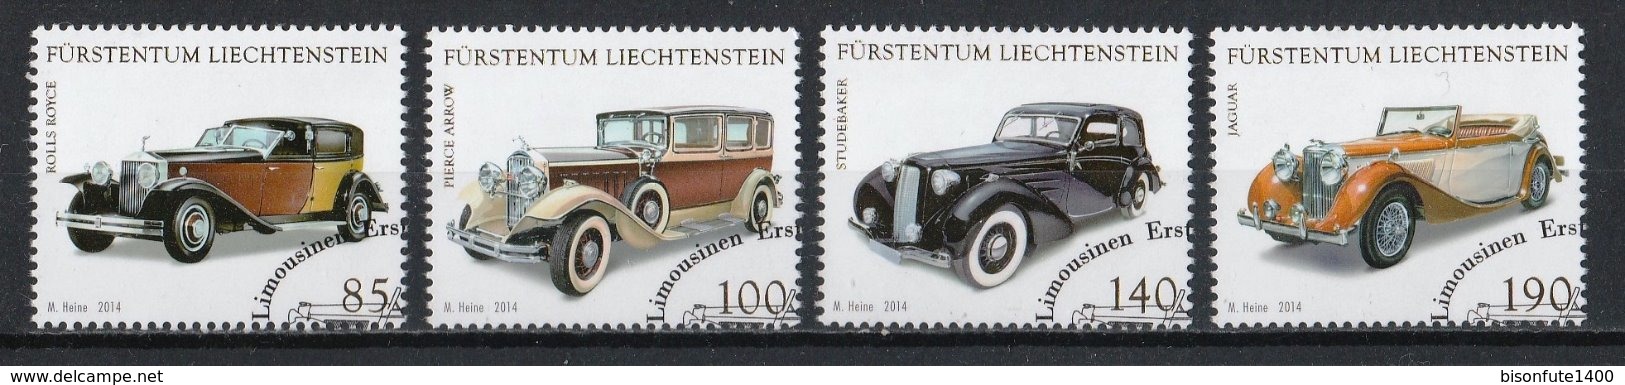 Liechtenstein 2014 : Timbres Yvert & Tellier N° 1666 - 1667 - 1668 Et 1669 Avec Oblit. Rondes. - Gebraucht